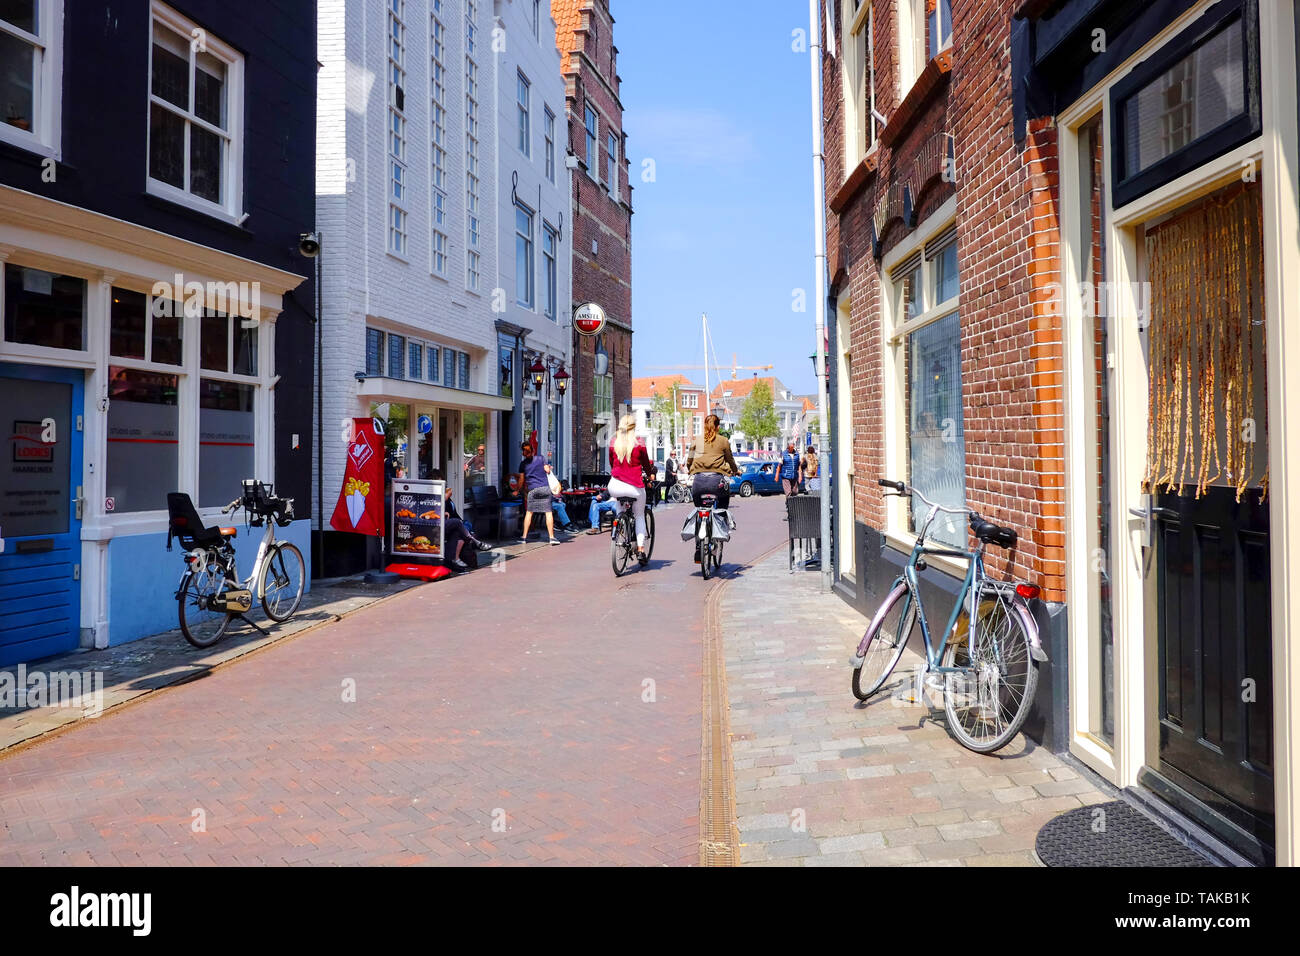 Street view en néerlandais typique va, deux filles à vélo dans une vieille rue du 17ème siècle avec de vieux bâtiments et des vélos garés sur le bord de la route Banque D'Images